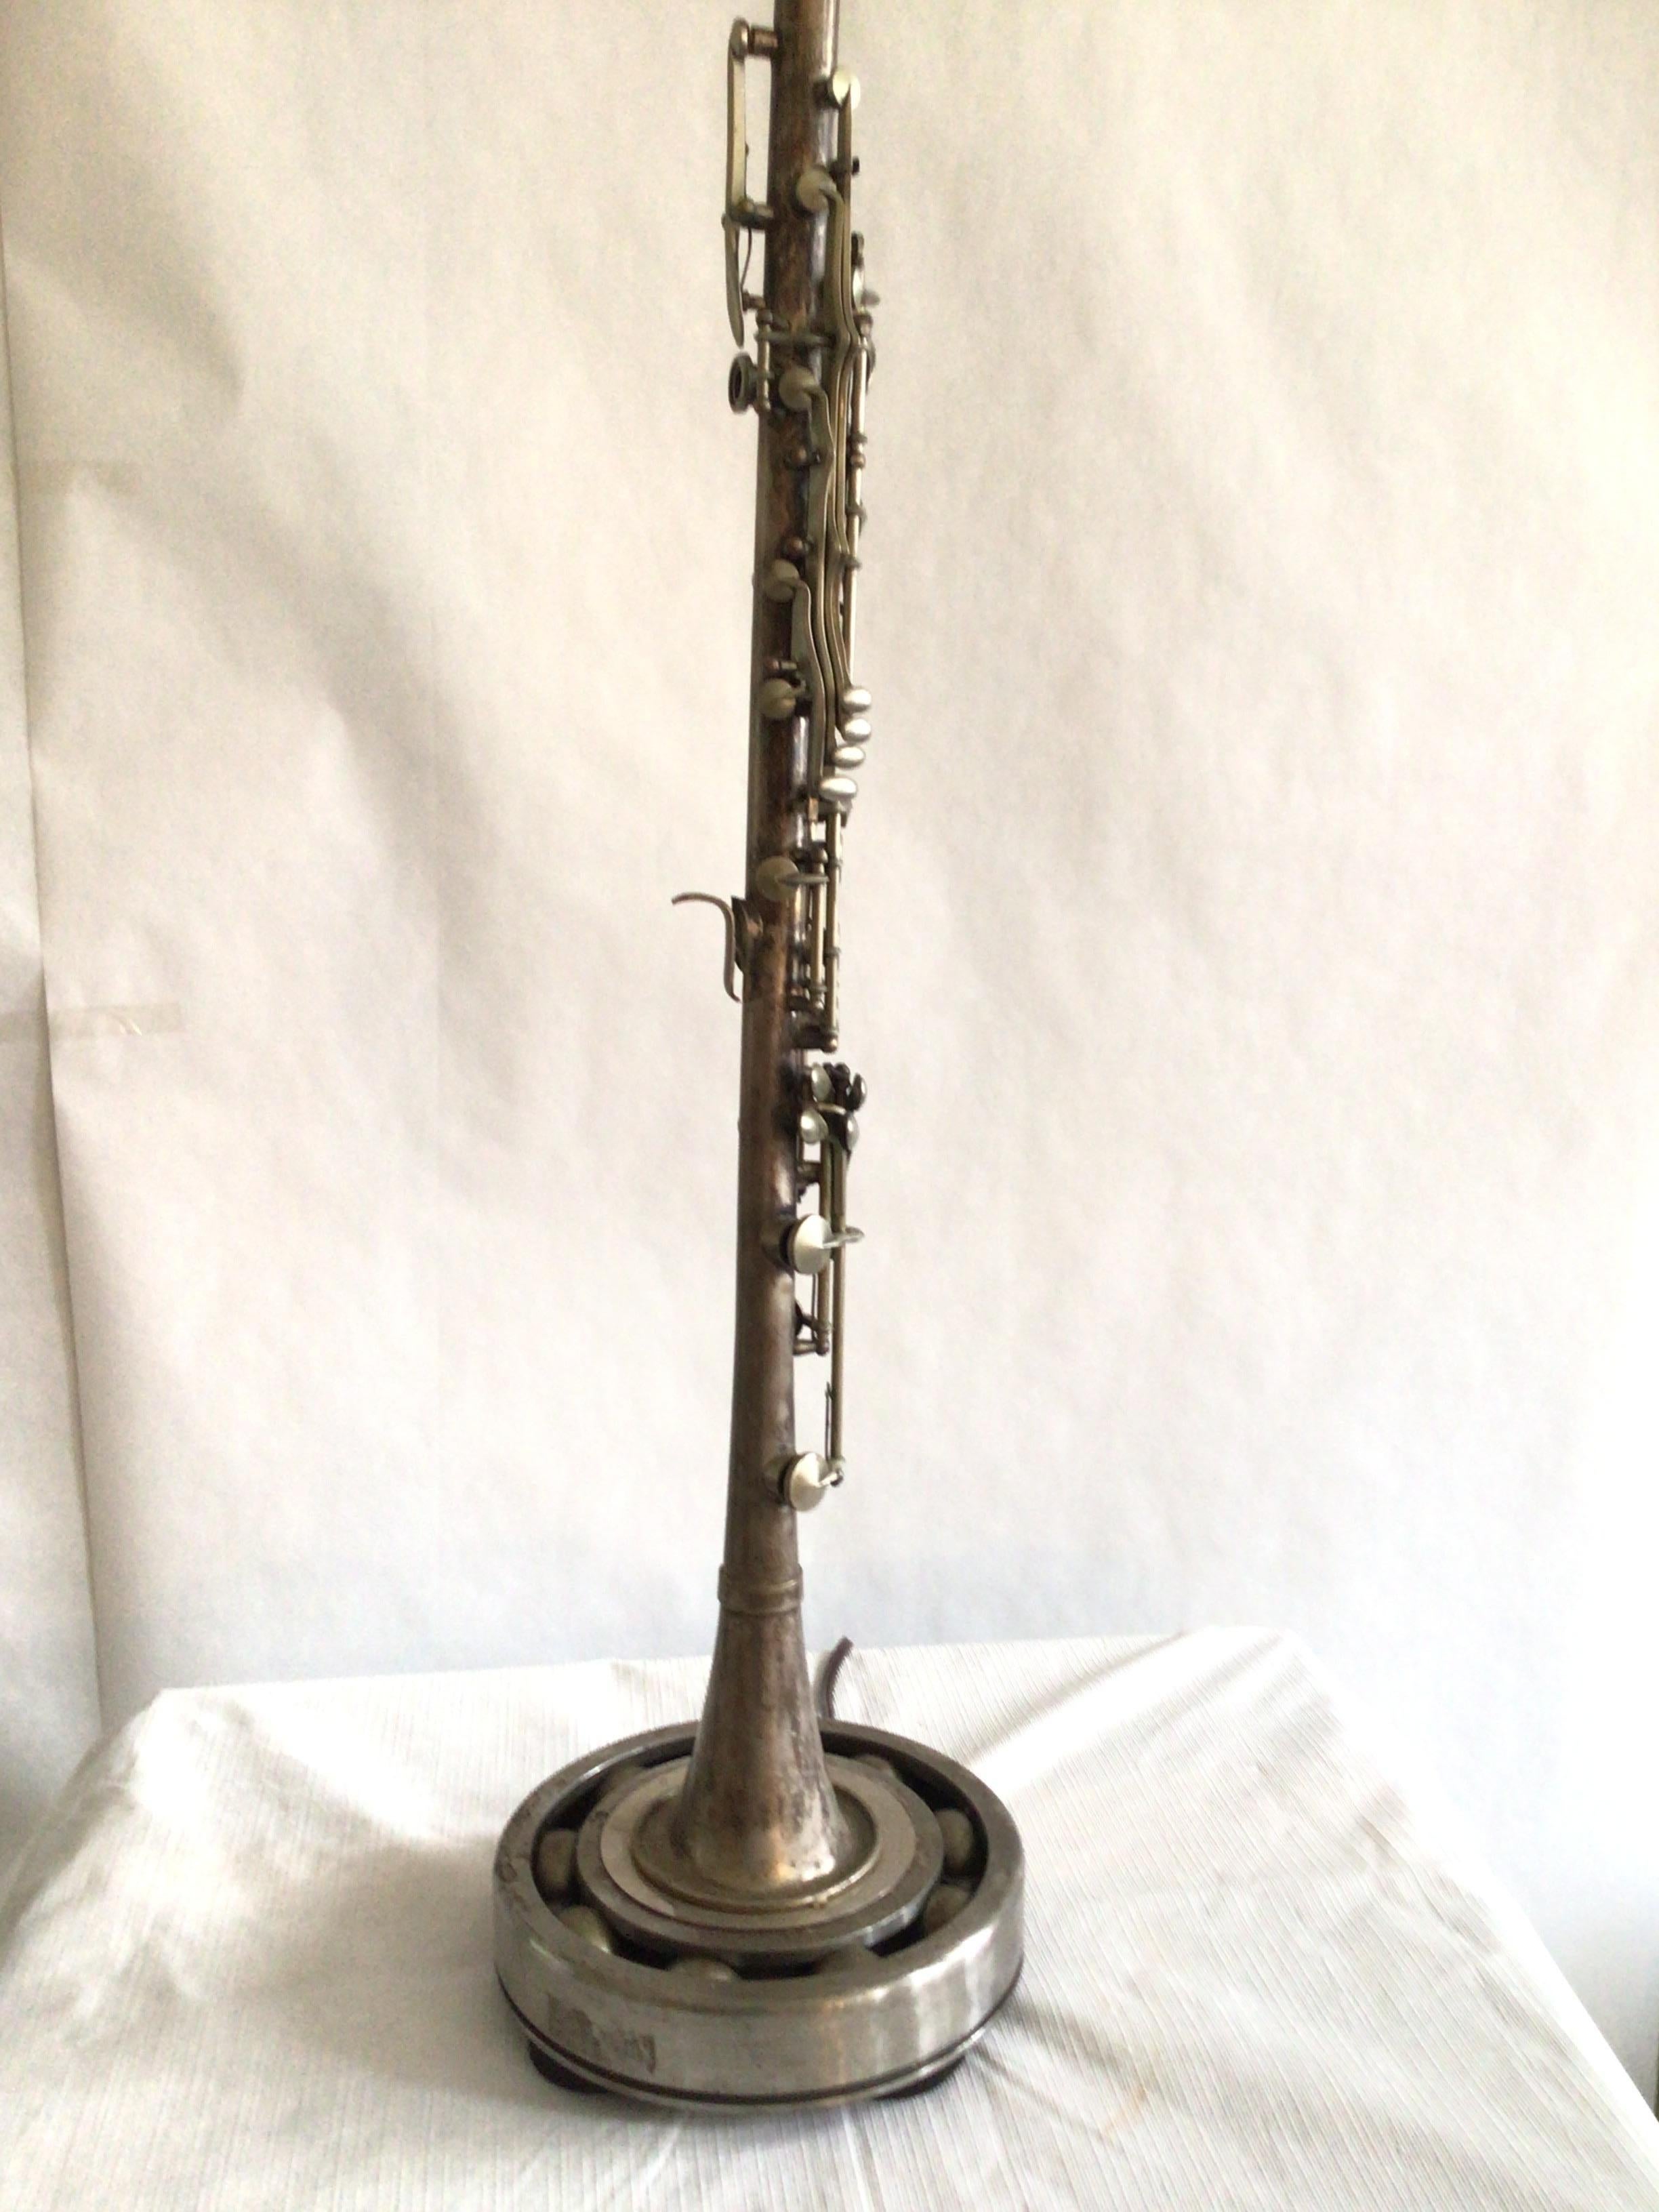 clarinet lamp